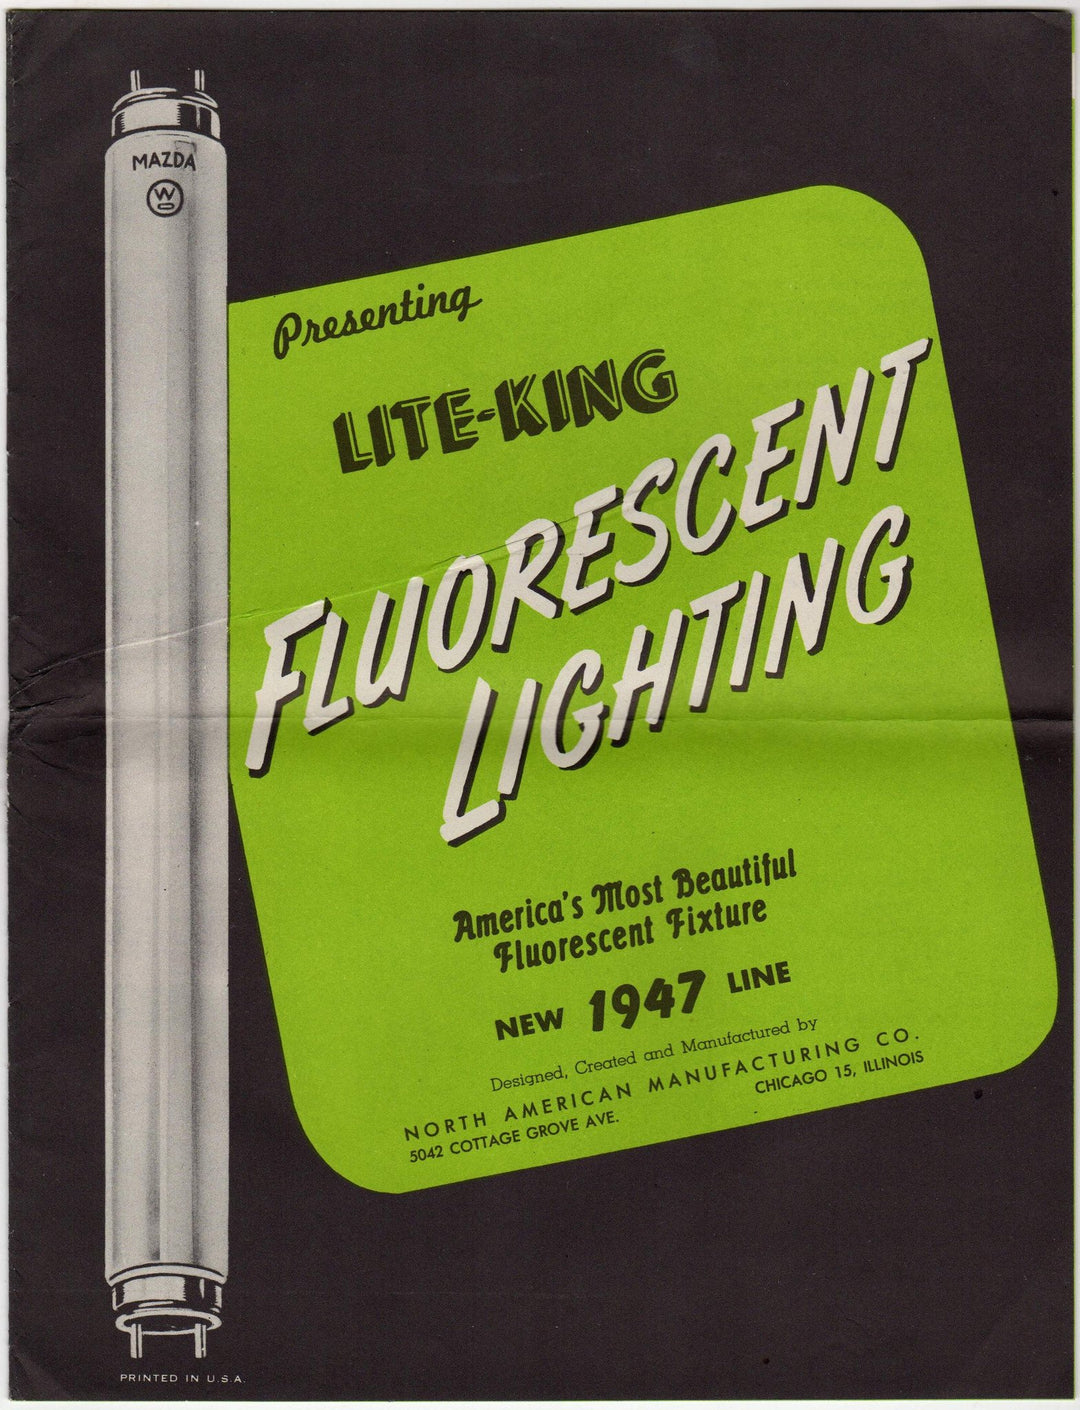 Lite-King Mazda Fluorescent Lighting Fixtures Vintage Advertising Brochure 1947